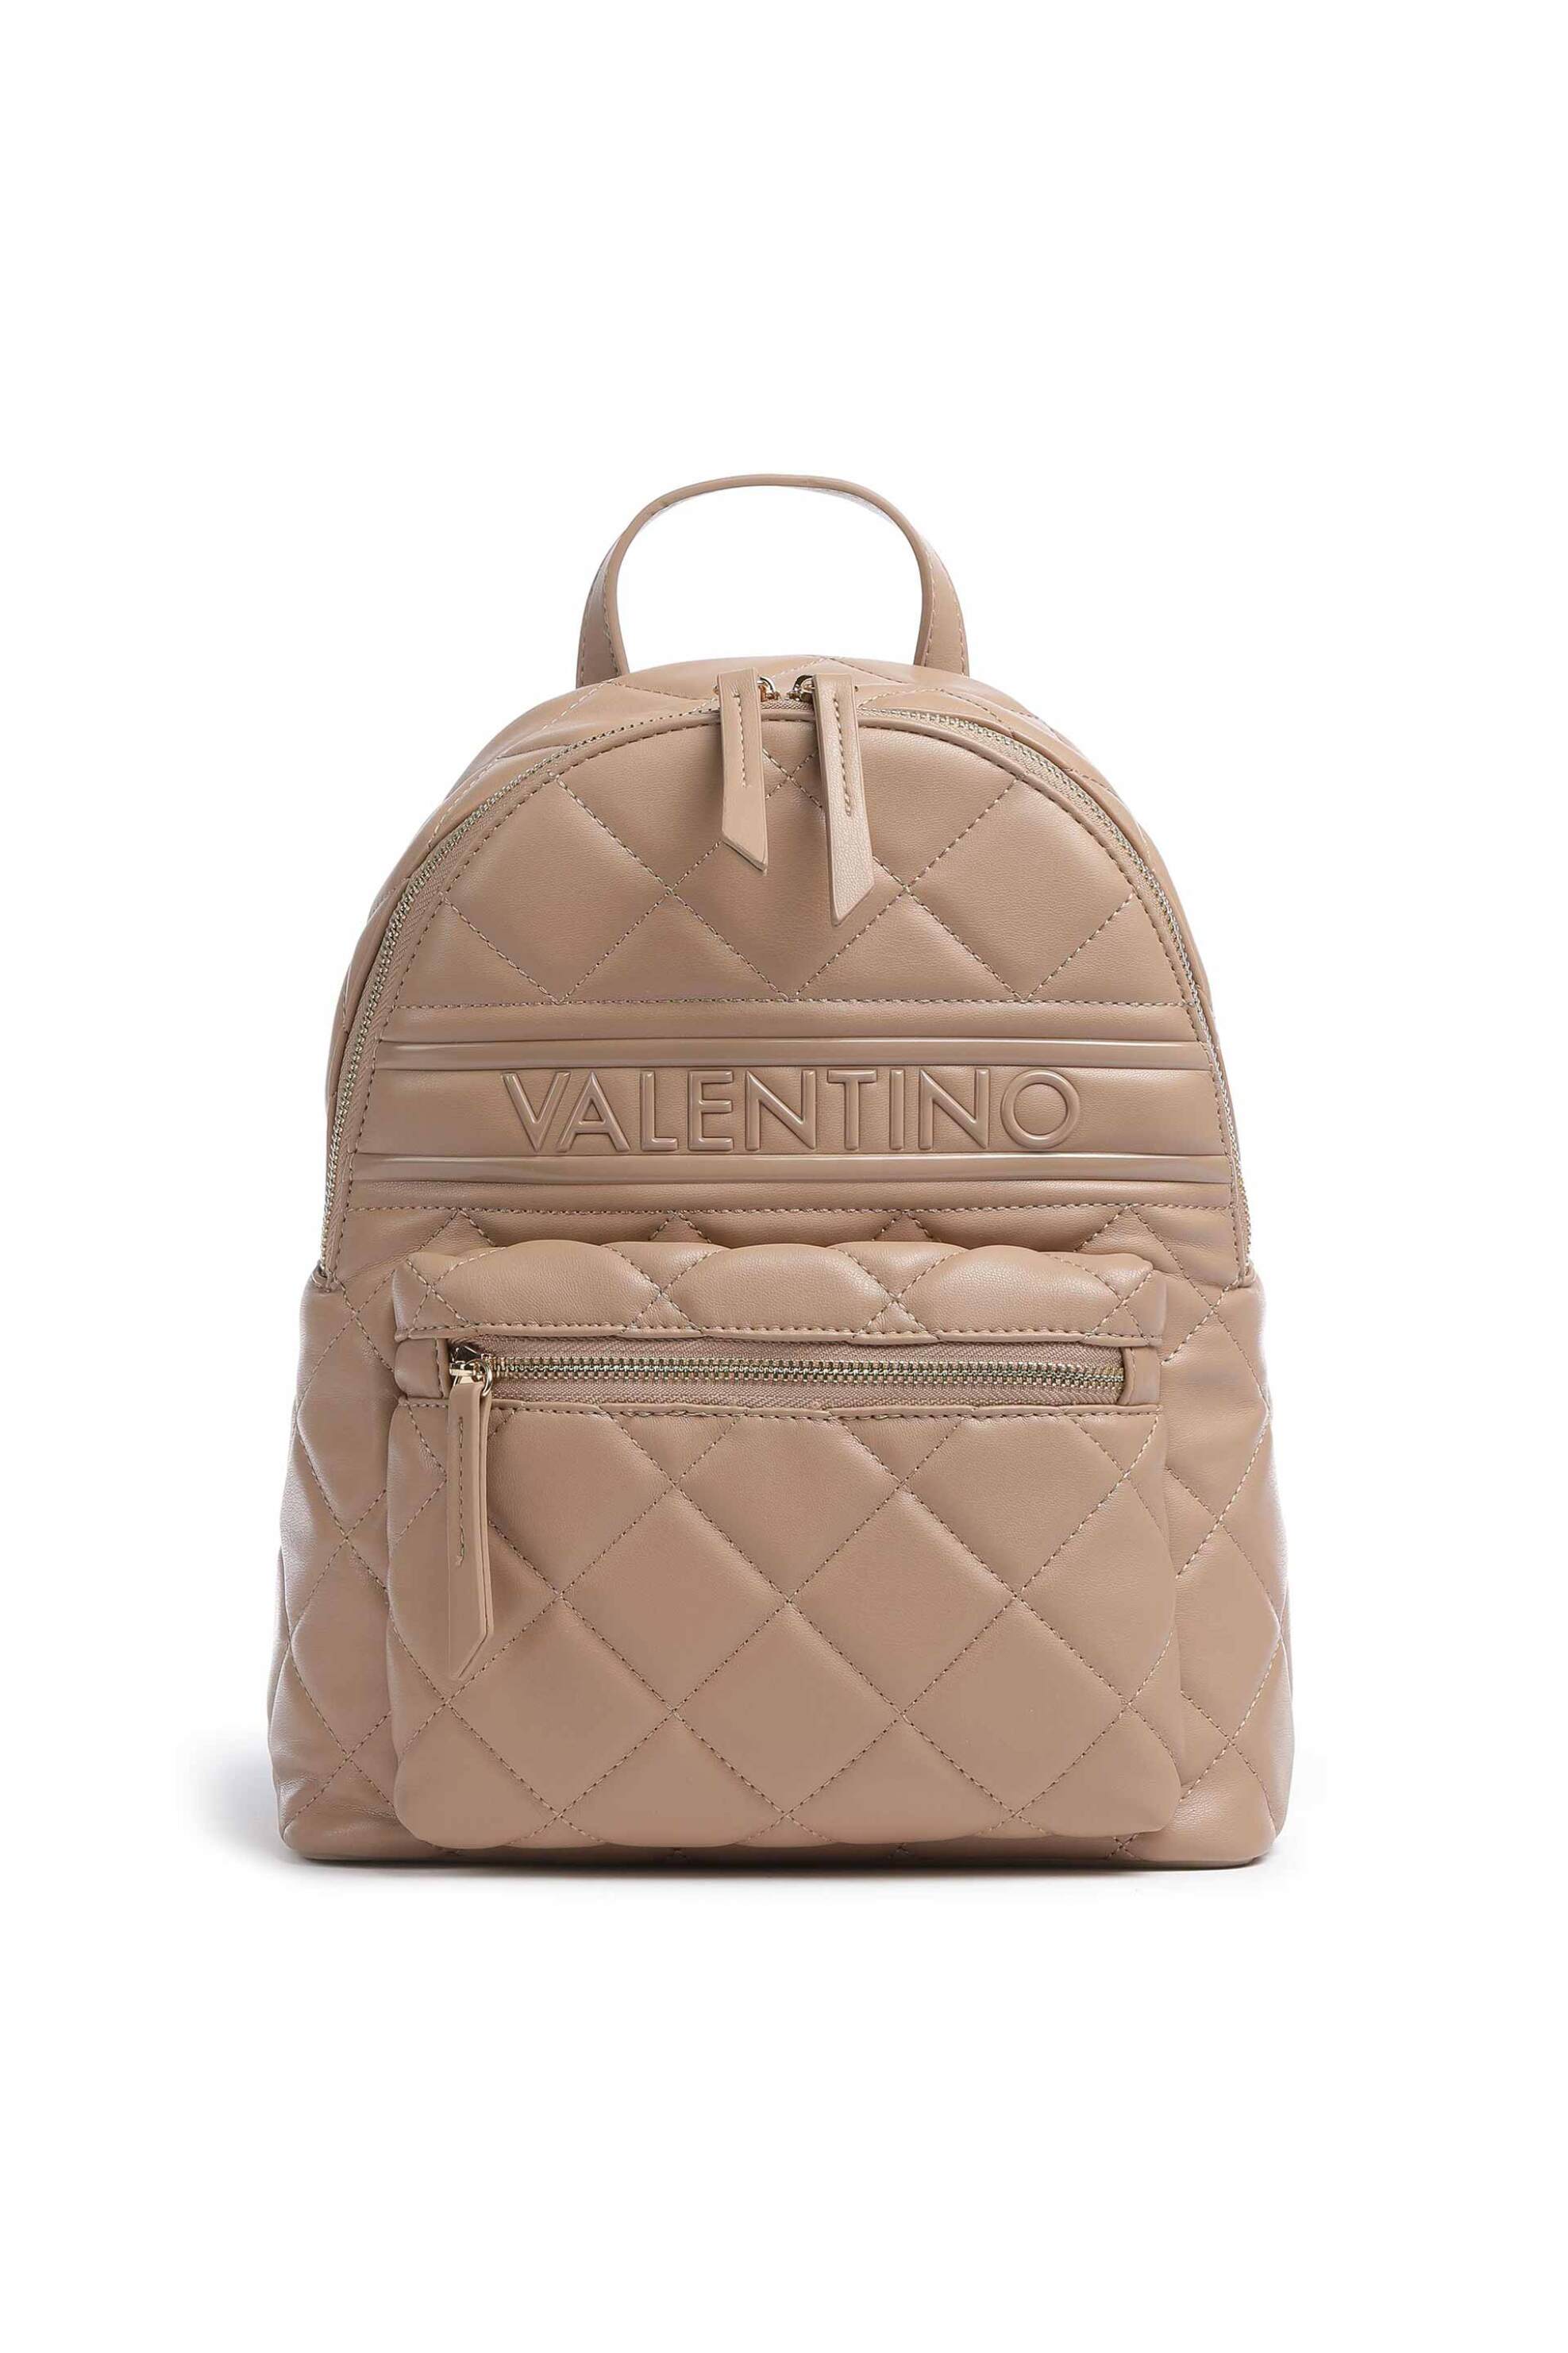 Γυναίκα > ΤΣΑΝΤΕΣ > Σακίδια & Backpacks Valentino γυναικείο backpack μονόχρωμο με all-over καπιτονέ σχέδιο "Ada" - 55KVBS51O07/ADA Μπεζ